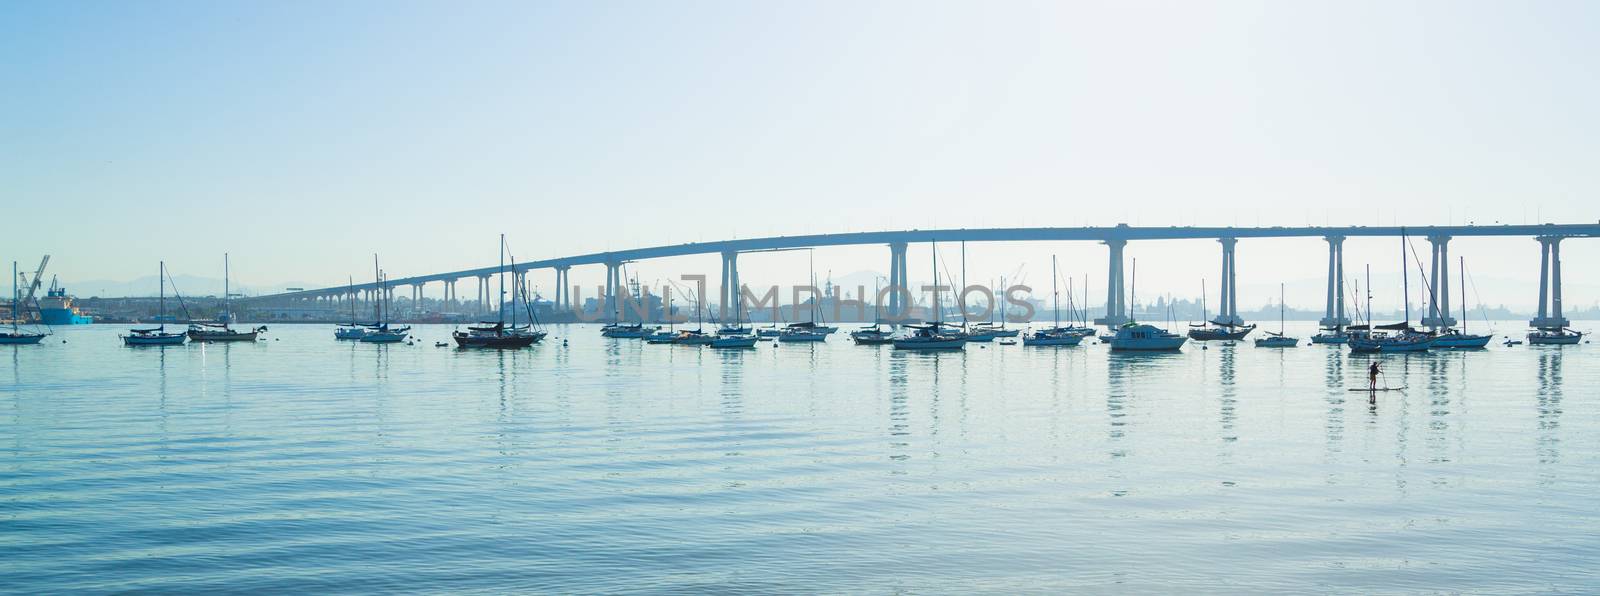 San Diego Coronado Bridge. San Diego waterfront with sailing Boats - Industrial harbor and Coronado Bridge.